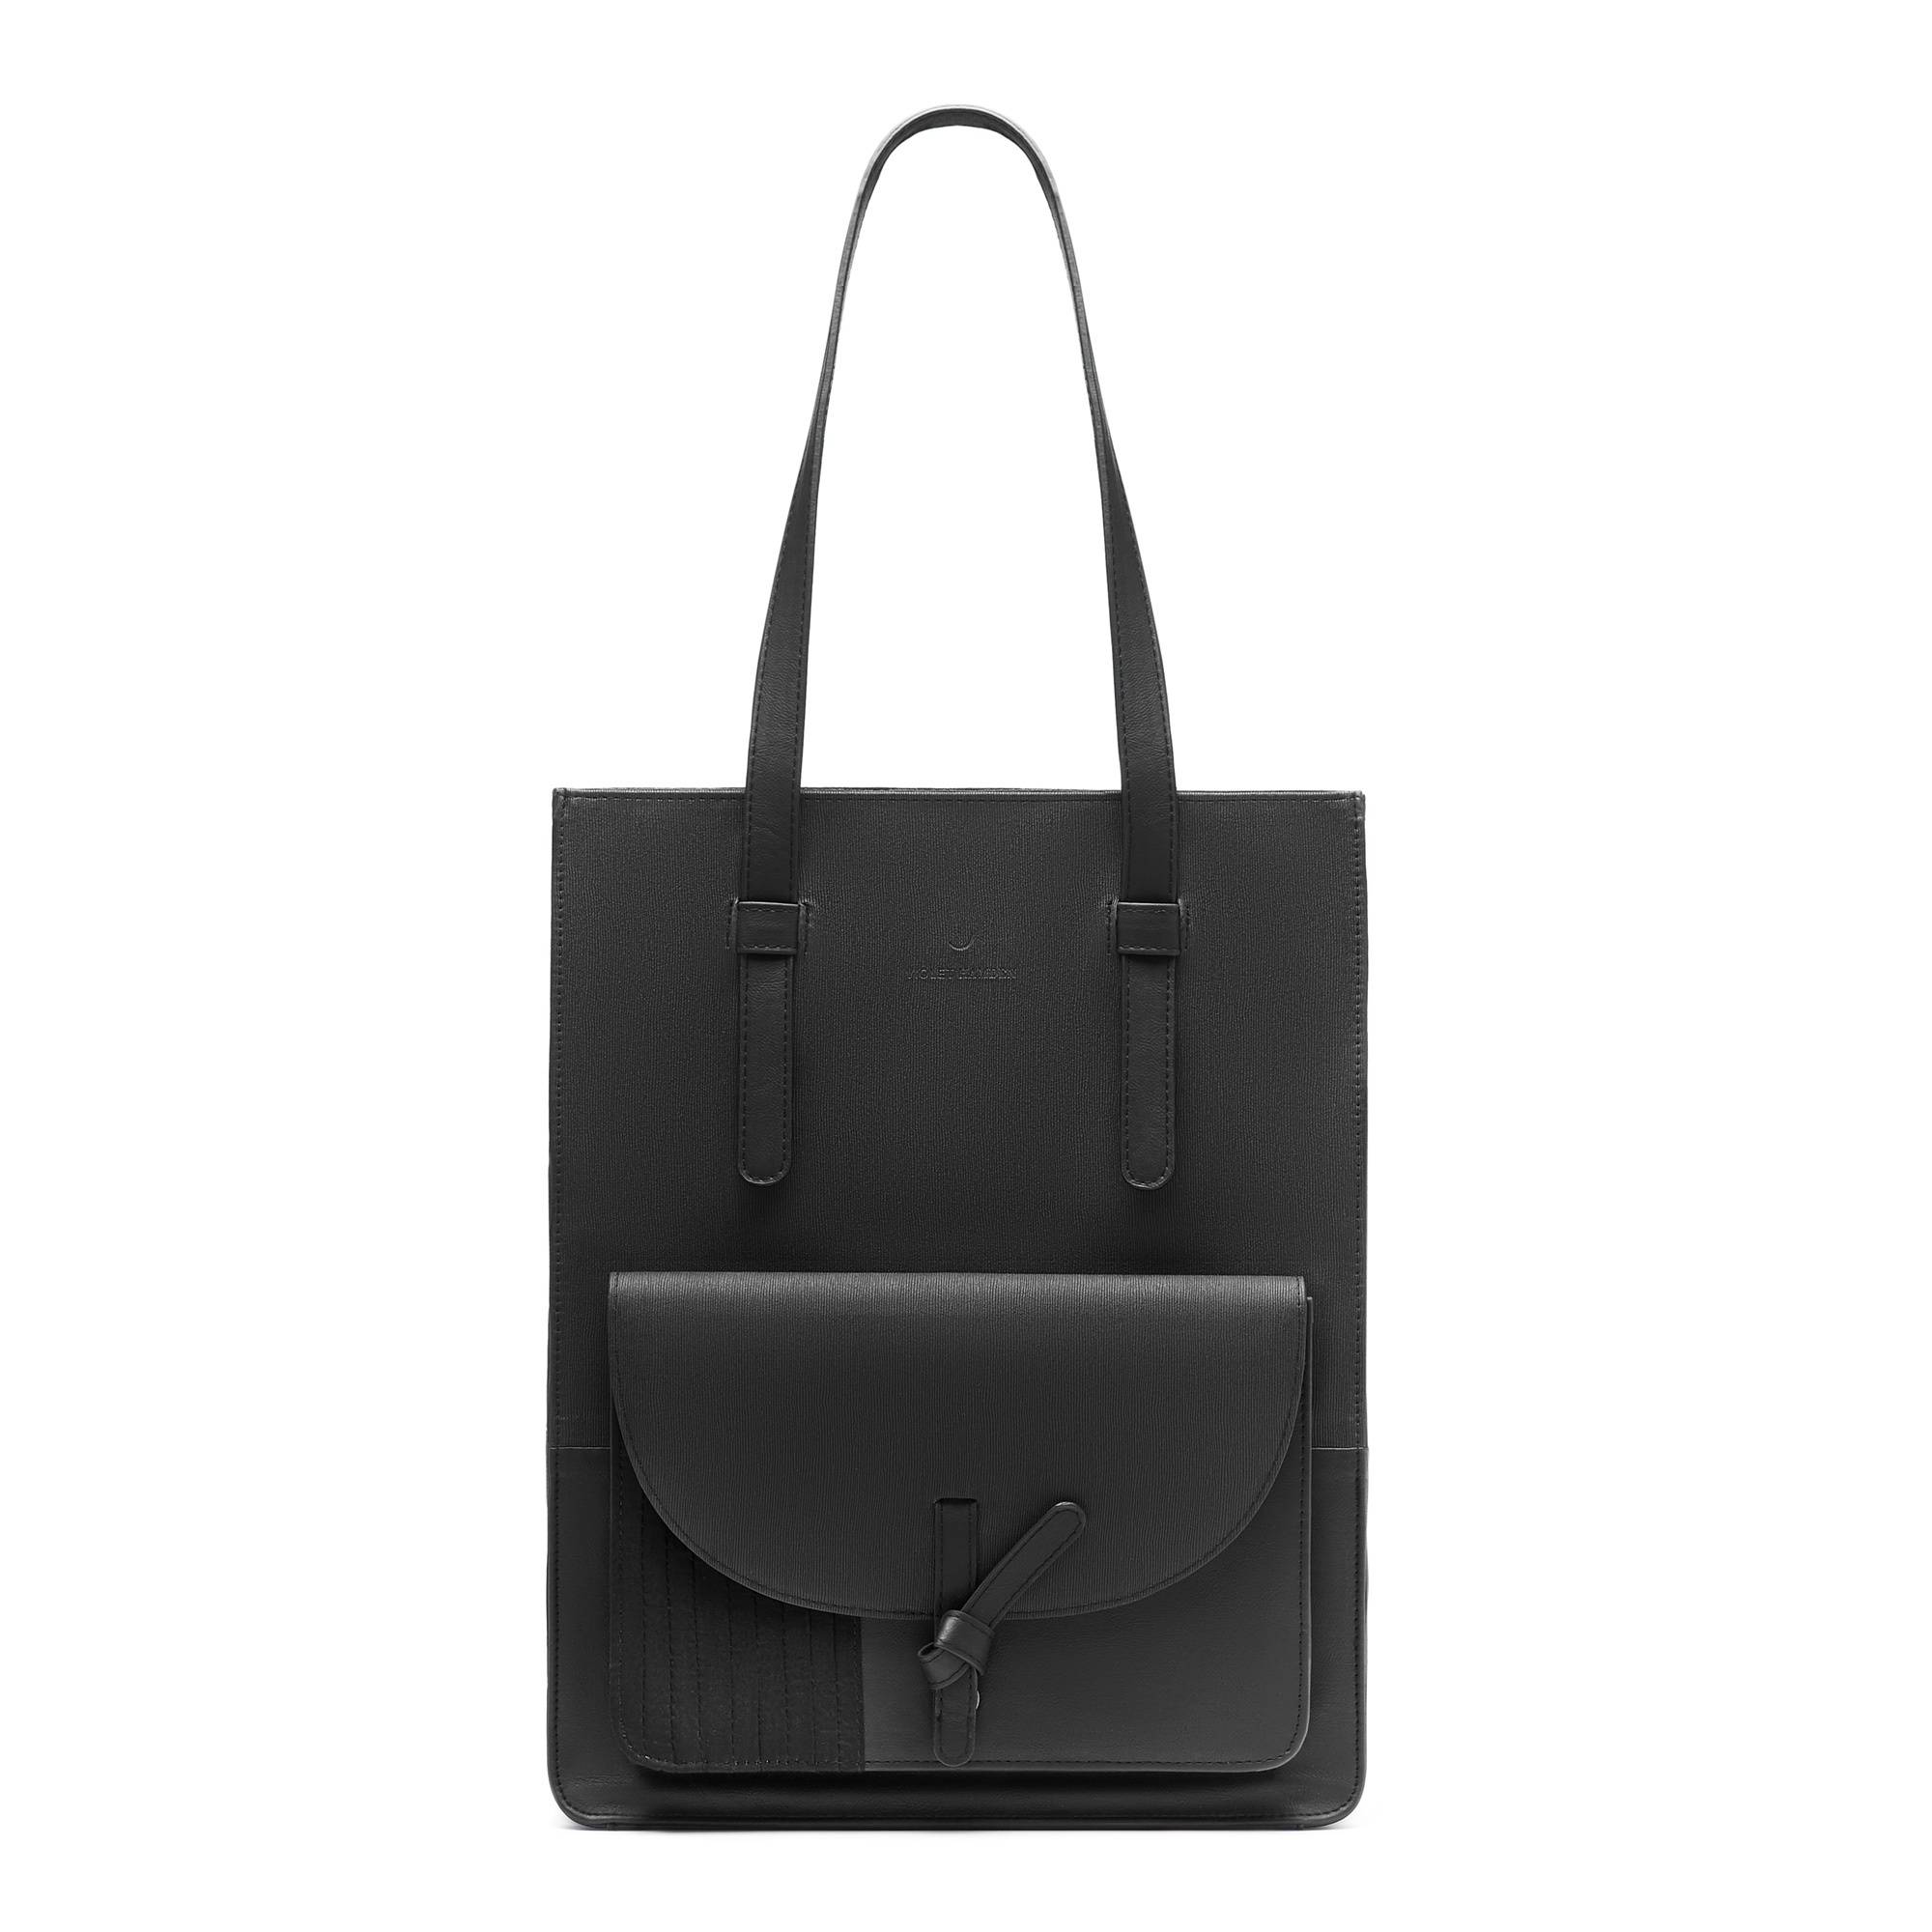 Essential Bag black shopper